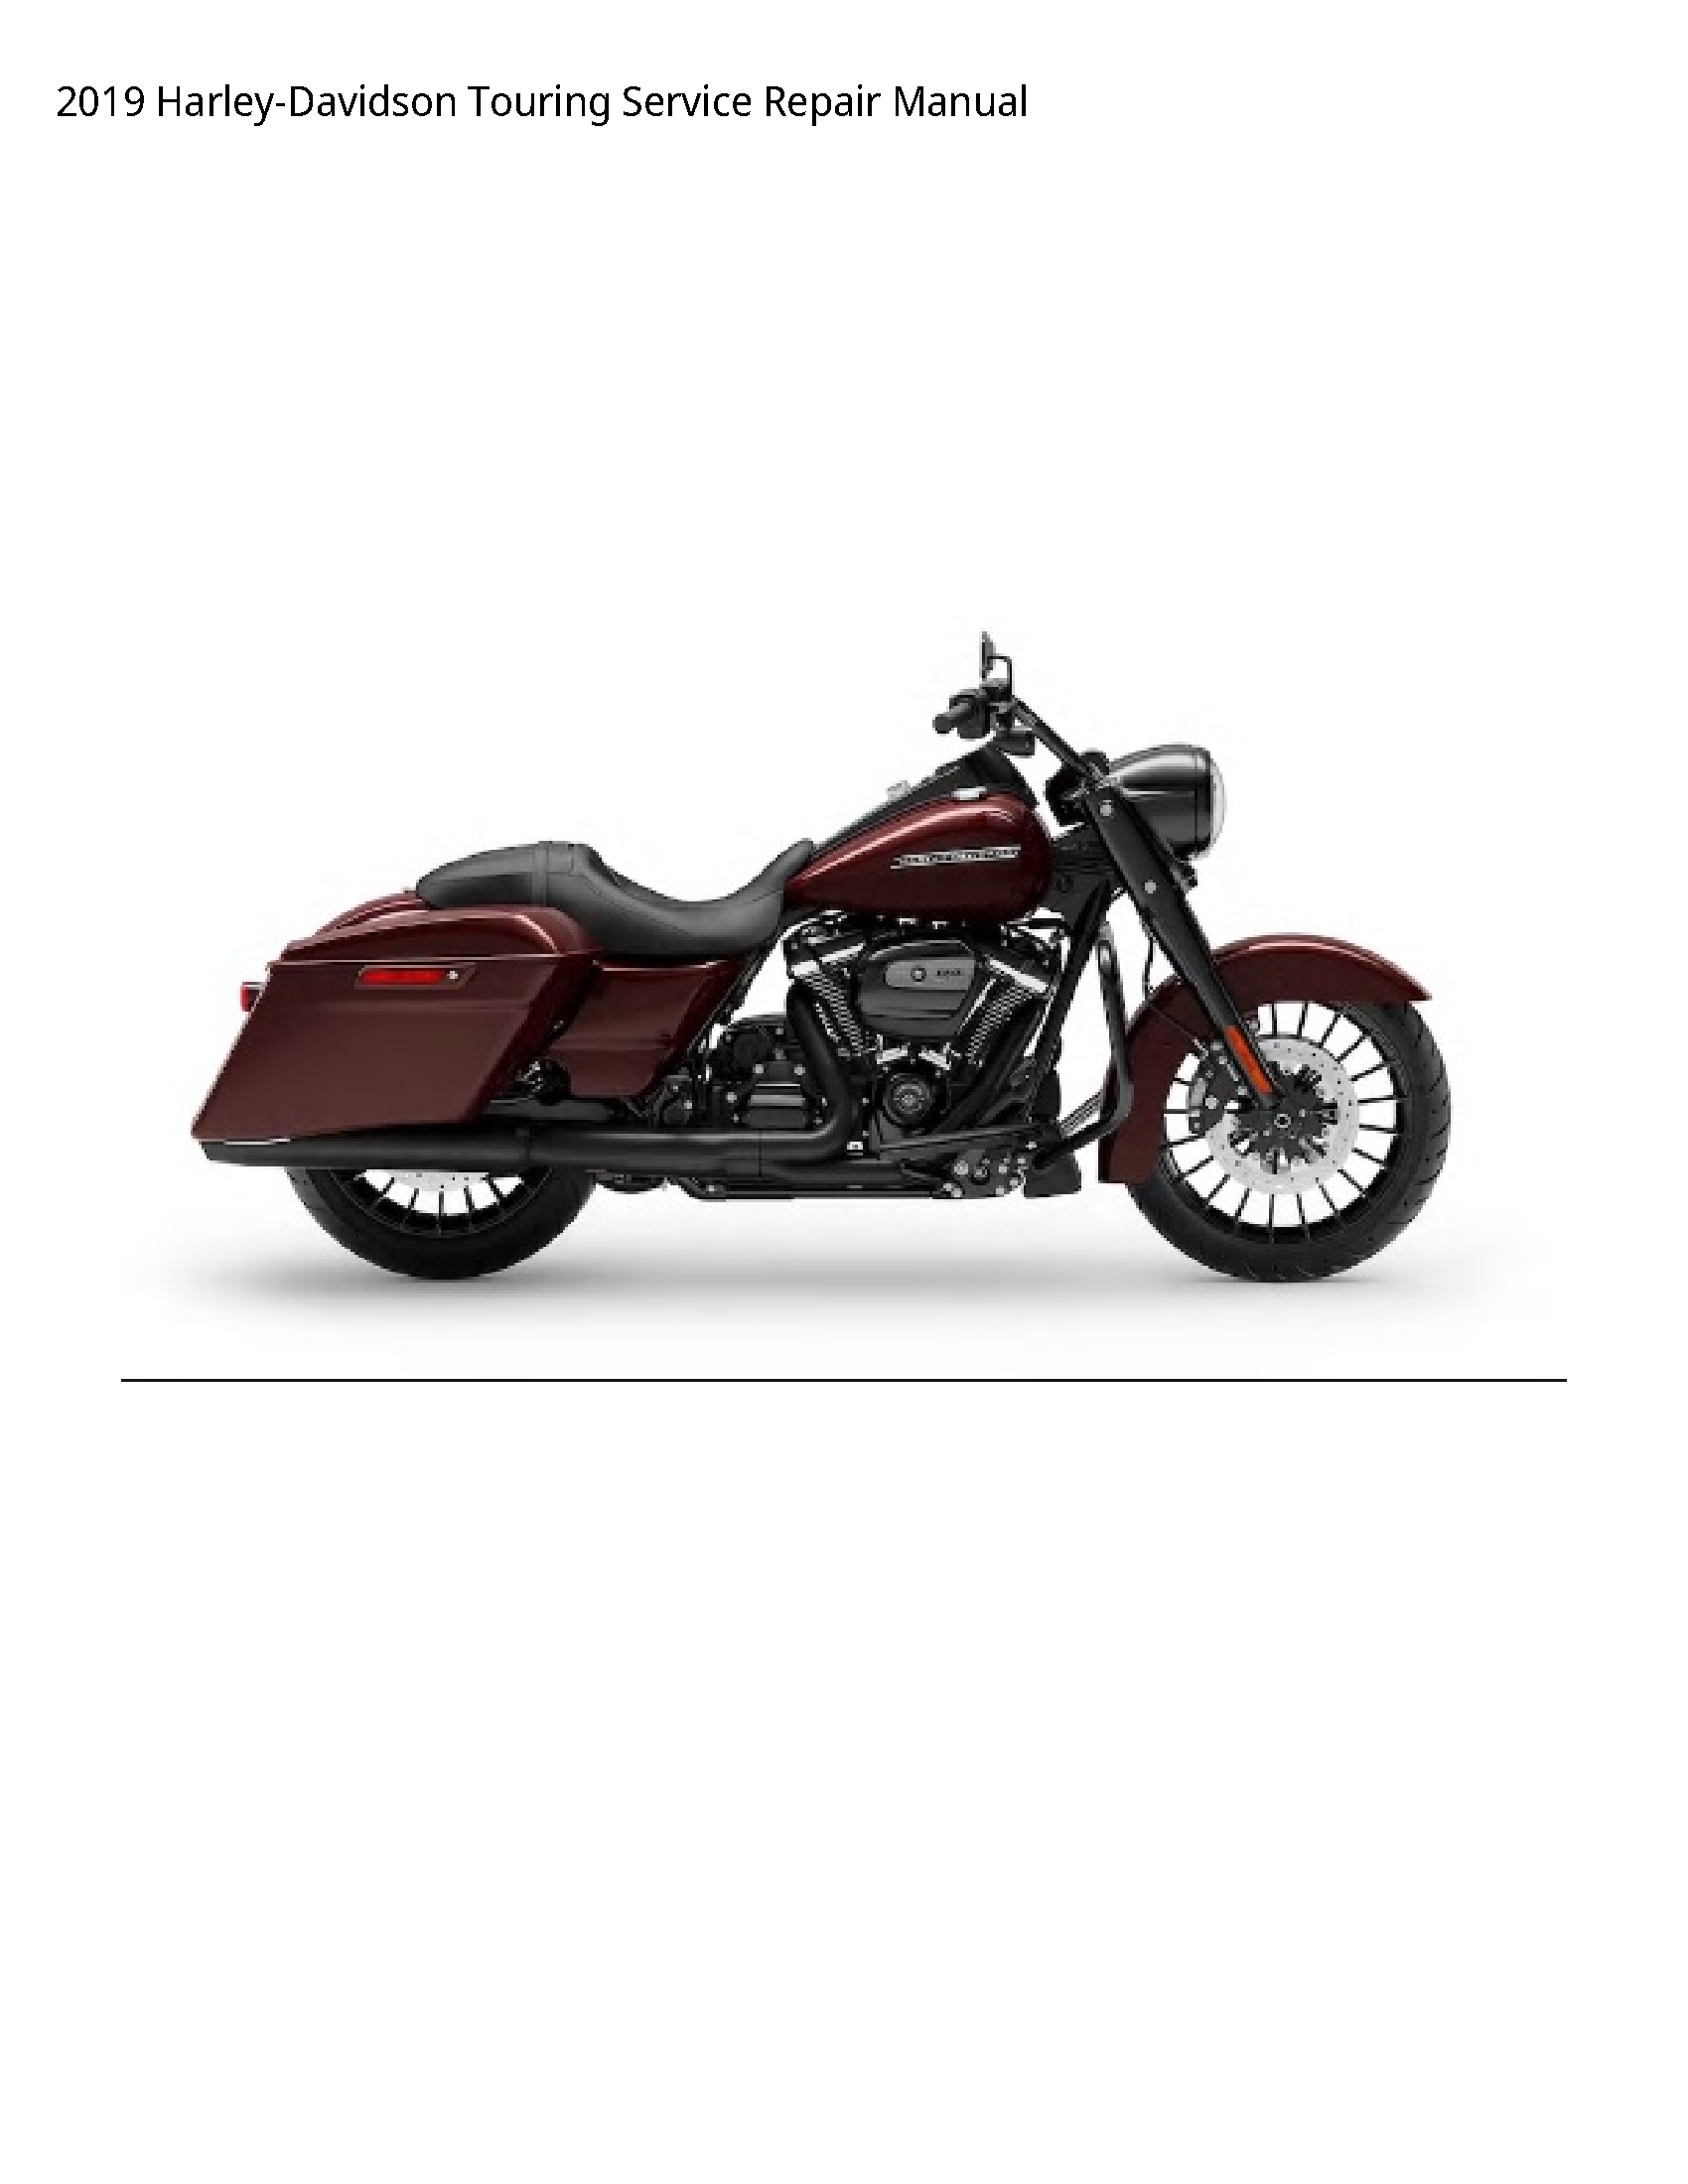 Harley Davidson Touring manual